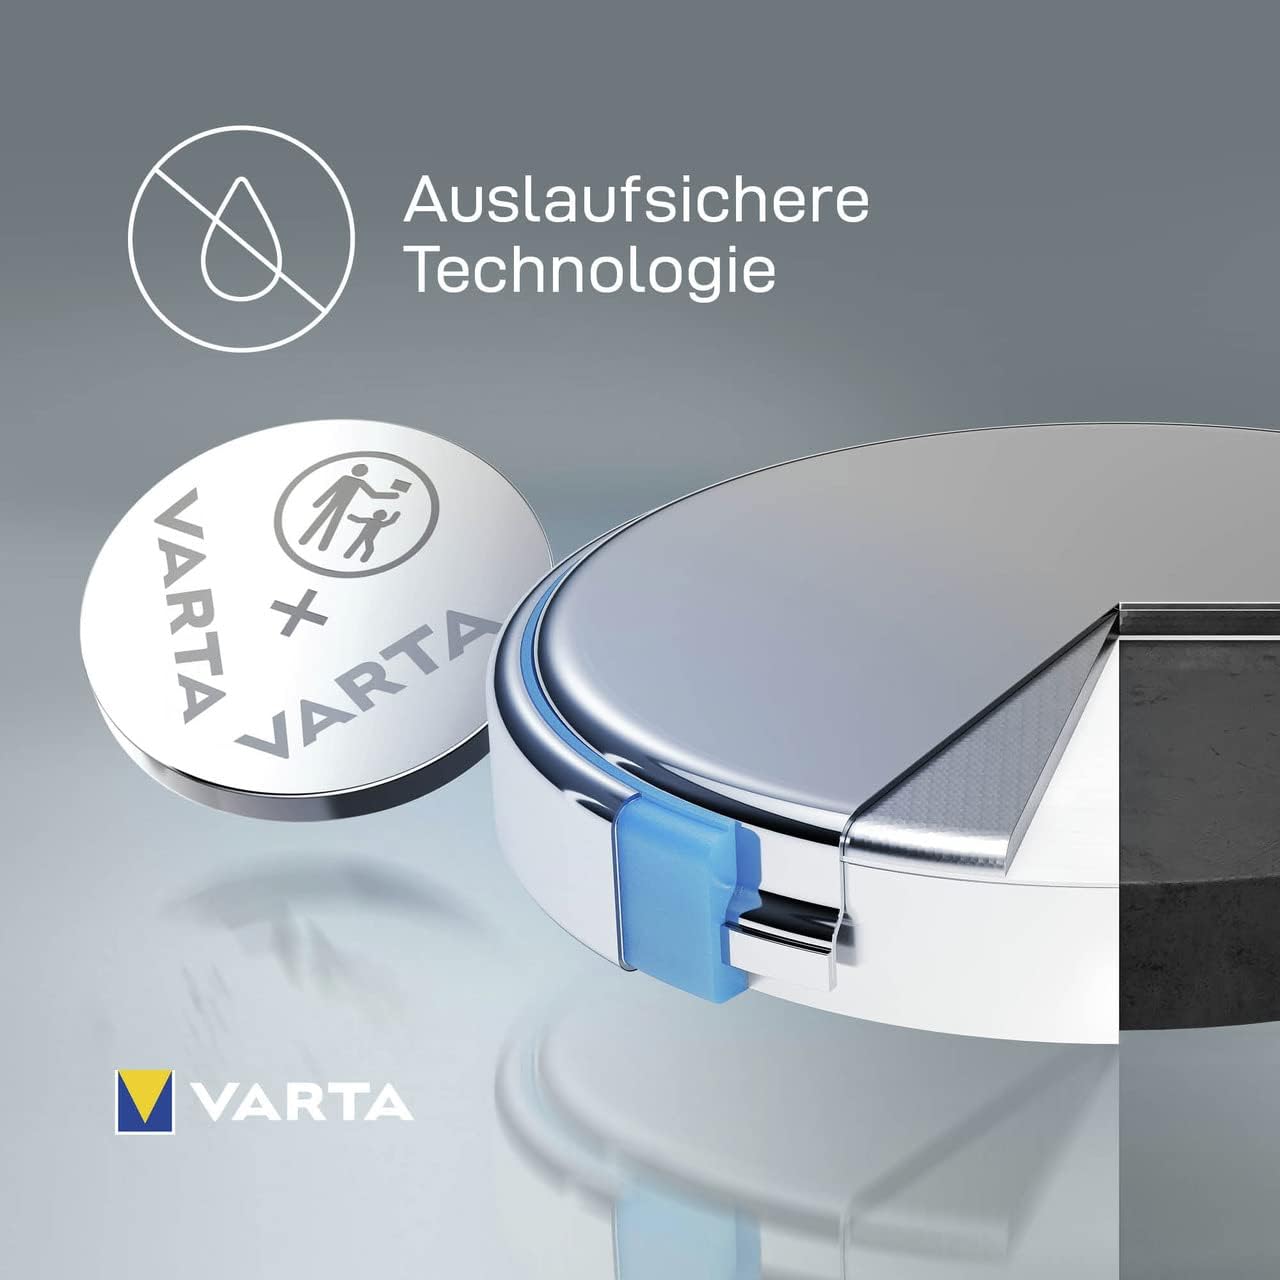 VARTA Batterien Knopfzelle CR2016 Lithium Coin 3V für elektronische Kleingeräte Autoschlüssel Fernbedienungen Waagen